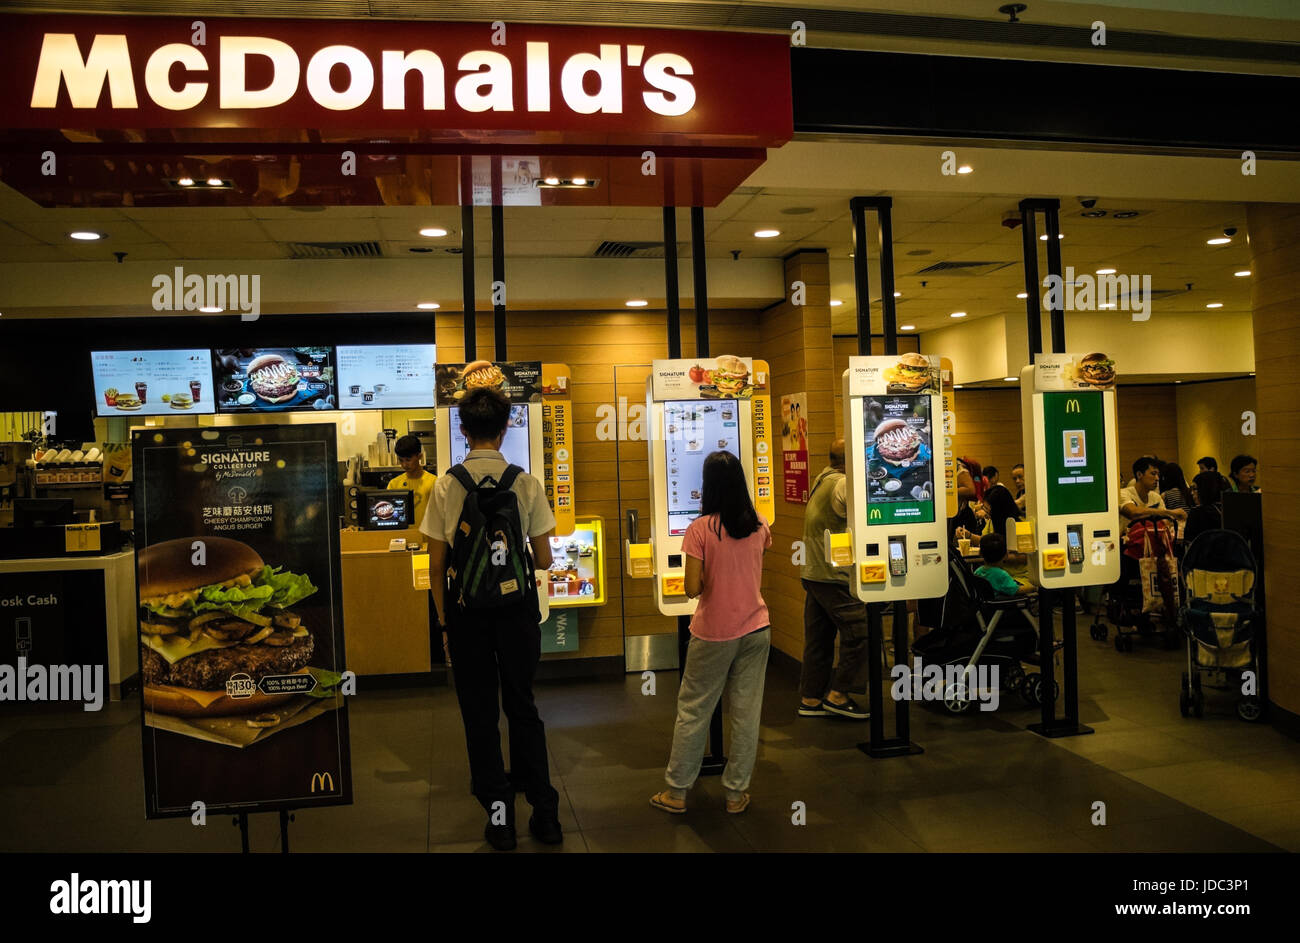 Computer food ordering machines at McDonald's Hong Kong Stock Photo